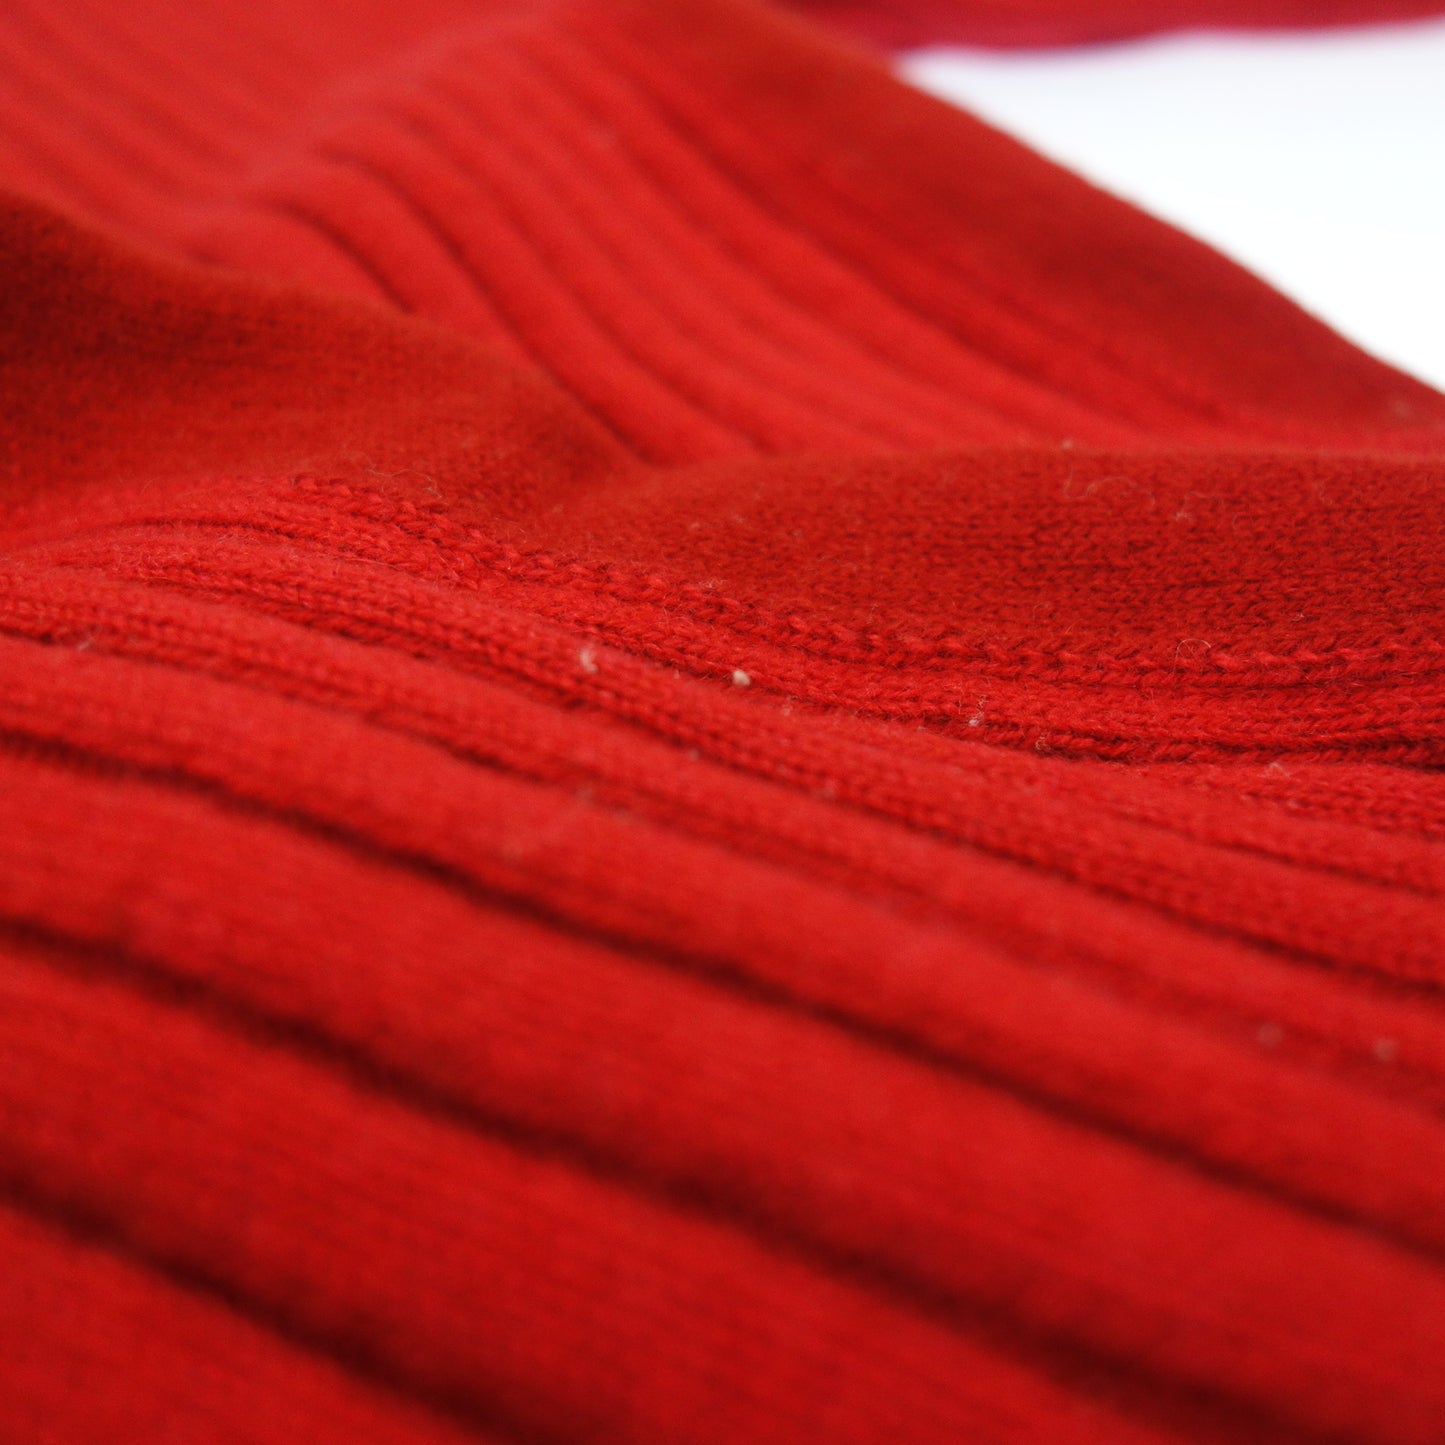 品相良好◆路易威登针织毛衣 100% 羊绒 金色纽扣 15AW RW152B 女式 M 码 红色 LOUIS VUITTON [AFB12] 